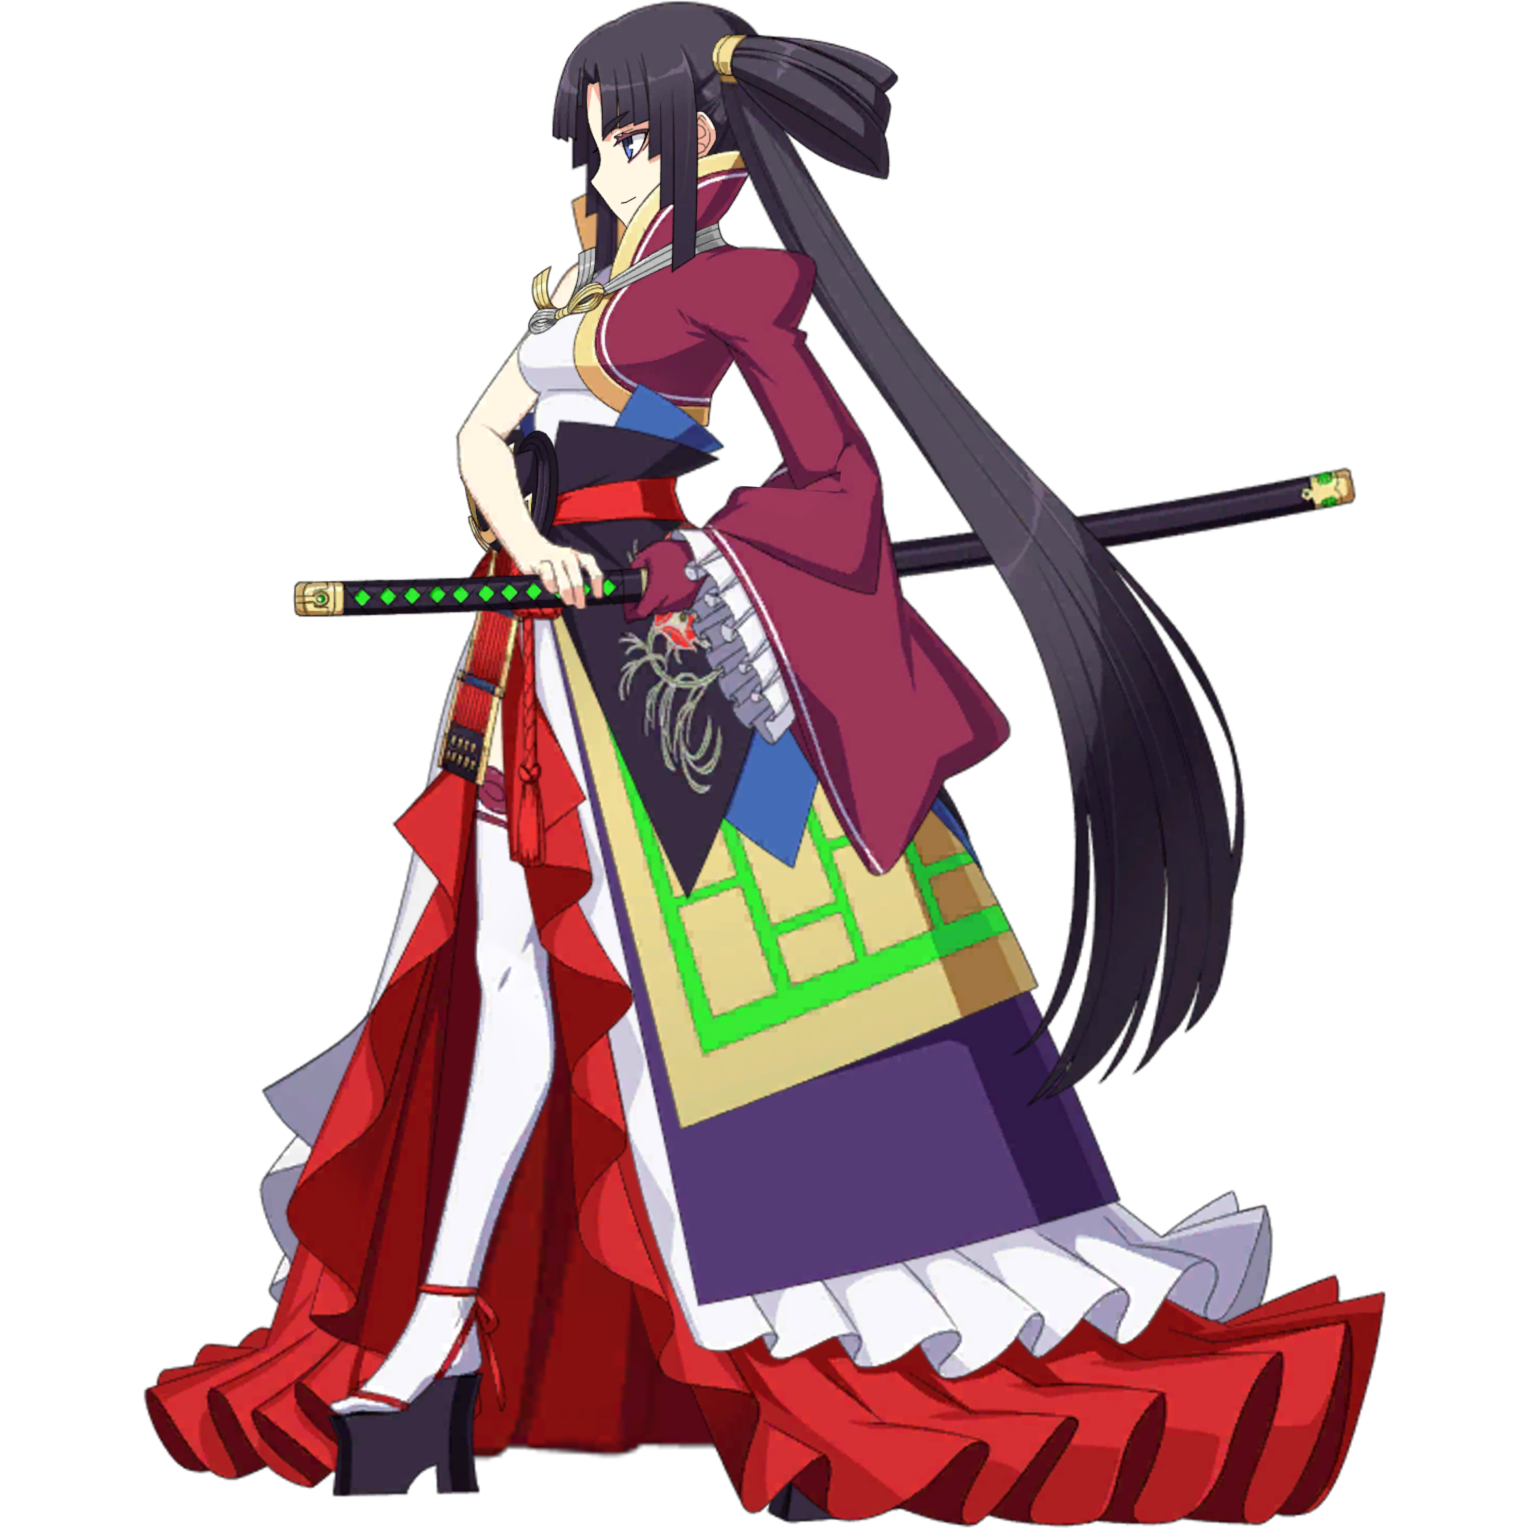 Ushiwakamaru Fate Grand Order Wiki Fandom